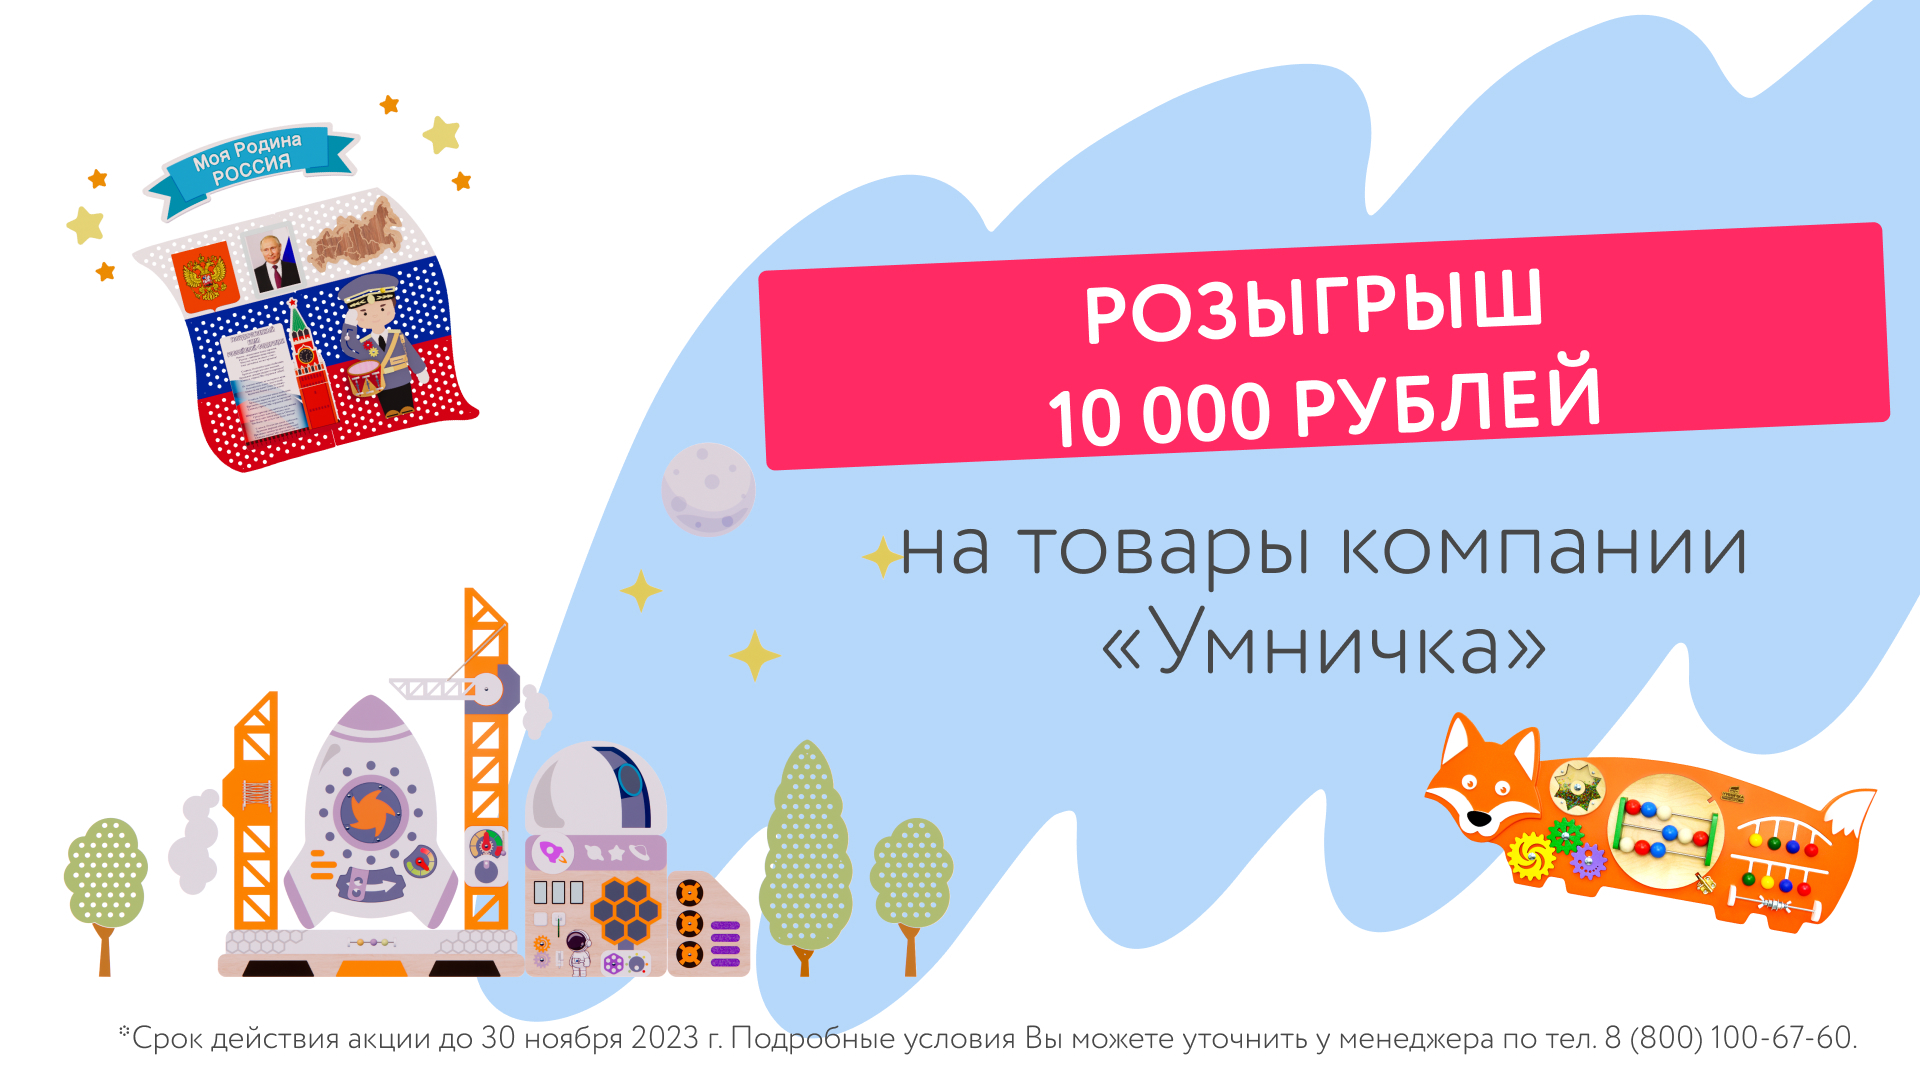 Участвуйте в розыгрыше и выигрывайте скидку 10 000 рублей на любые товары!*